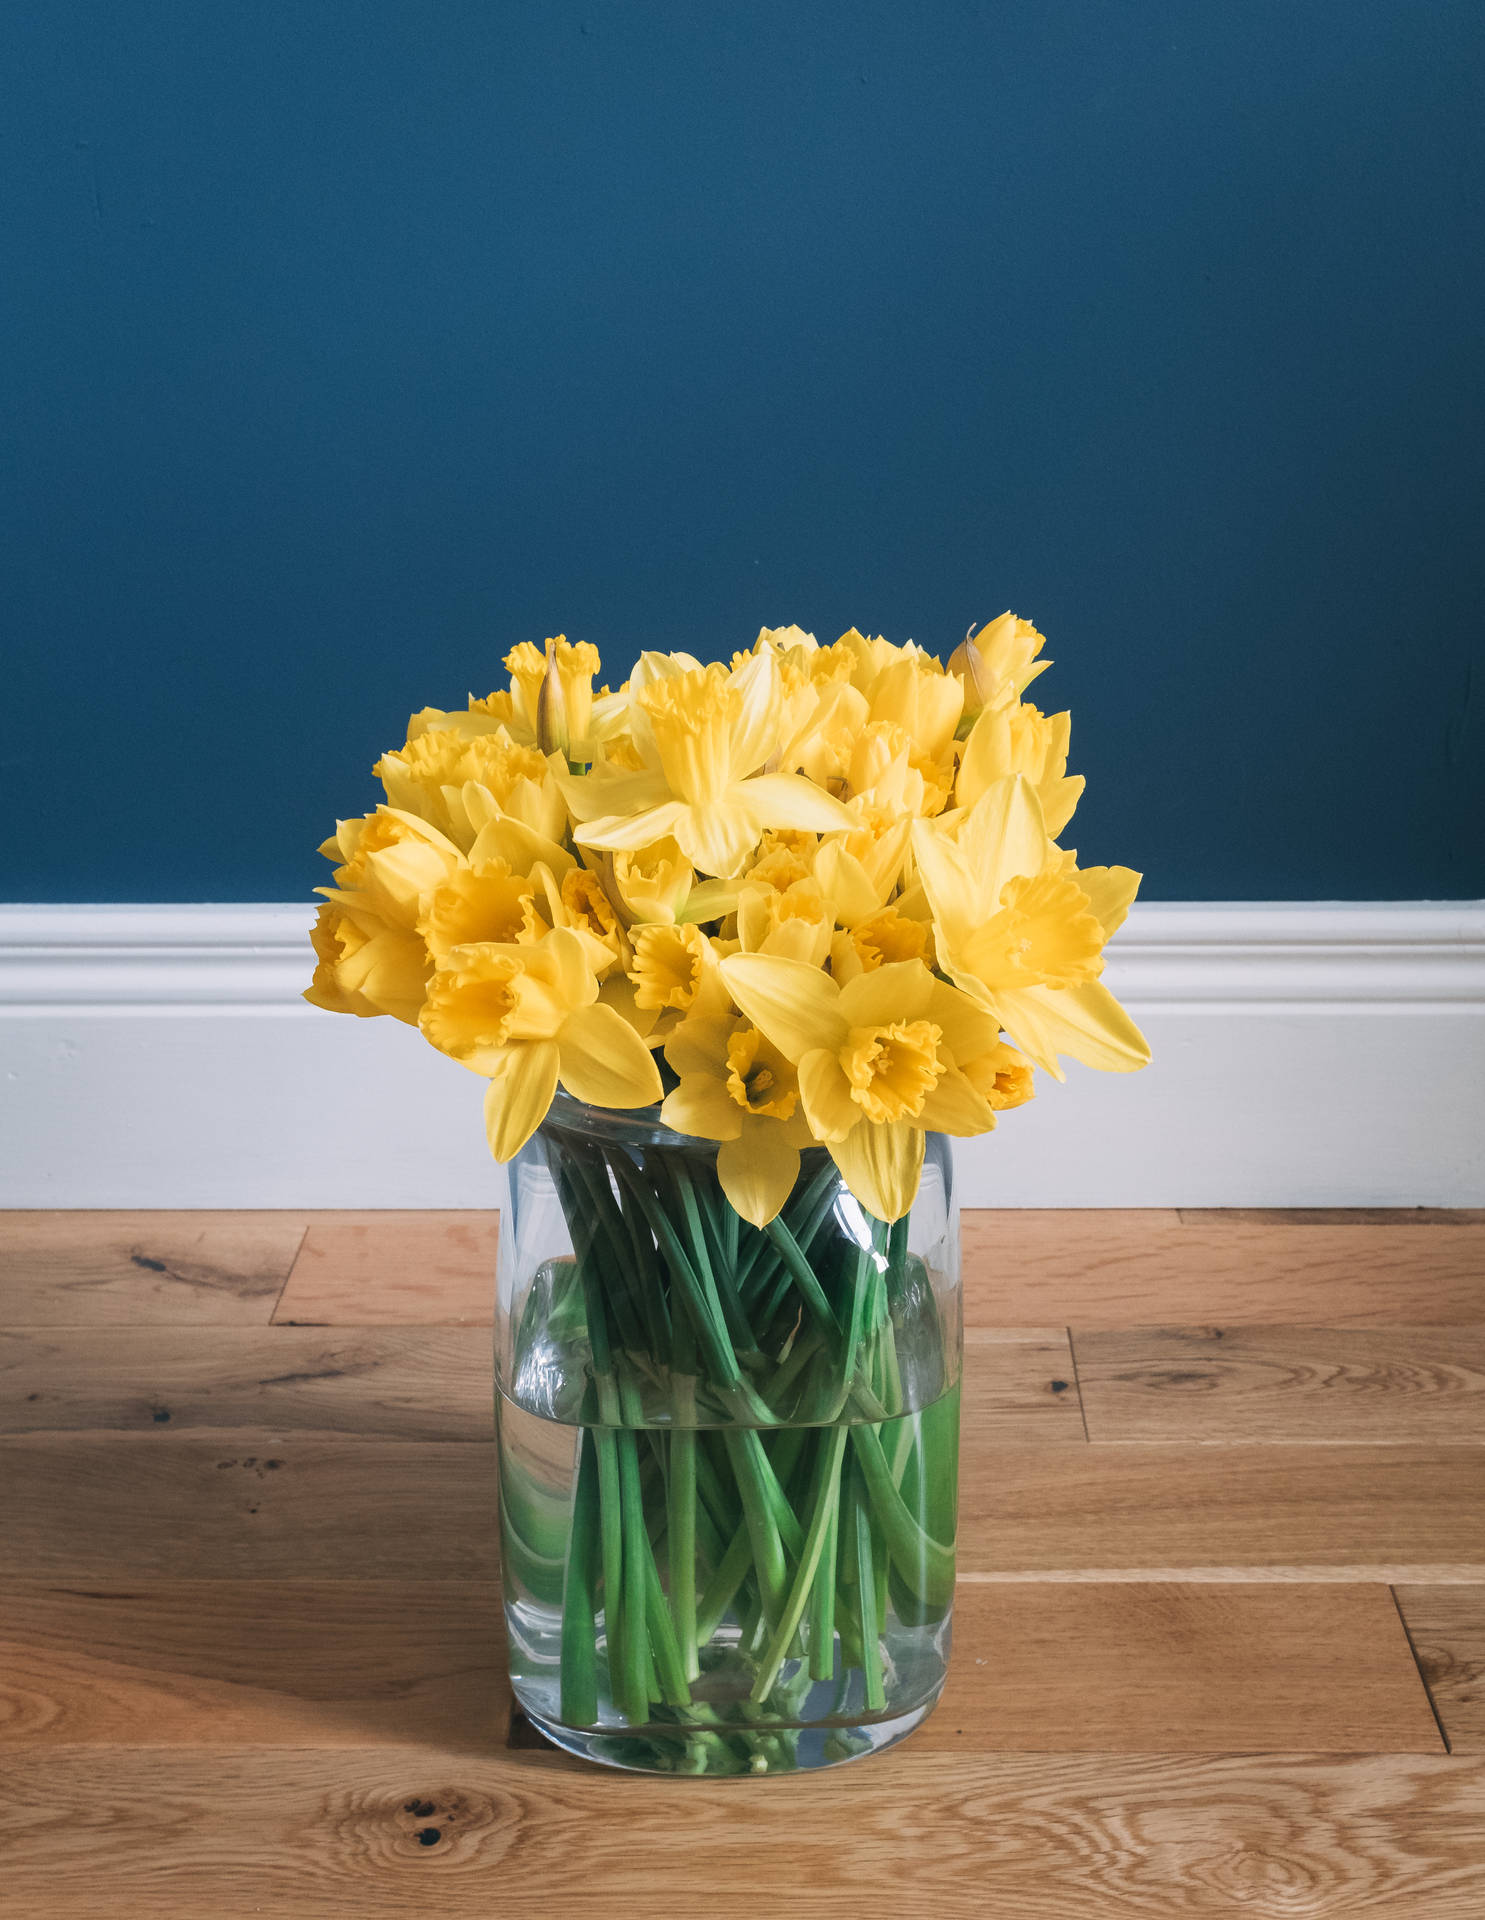 Daffodil Flower Arrangement Background